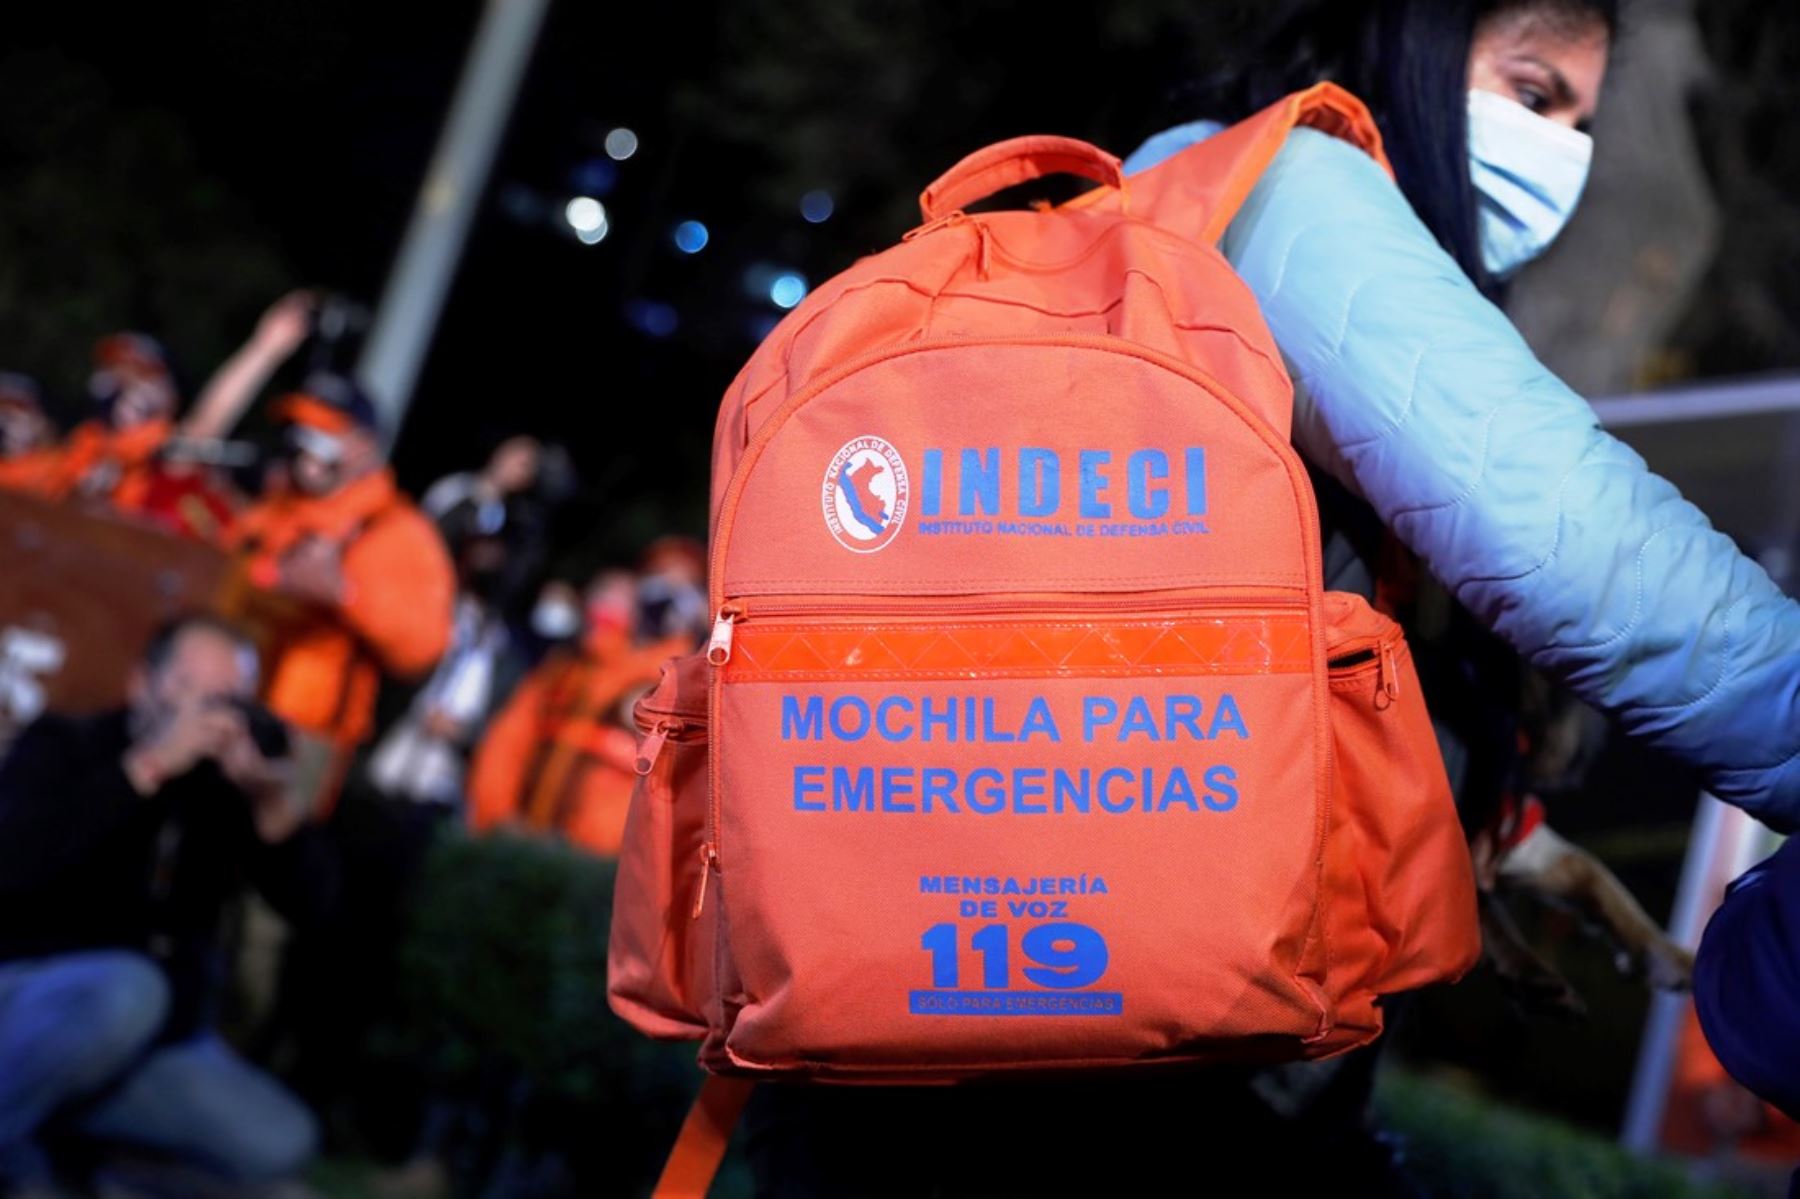 Al tener preparada la mochila de emergencia podrían ganarse minutos valiosos que salvarían vidas. Foto: ANDINA/David Huamaní.